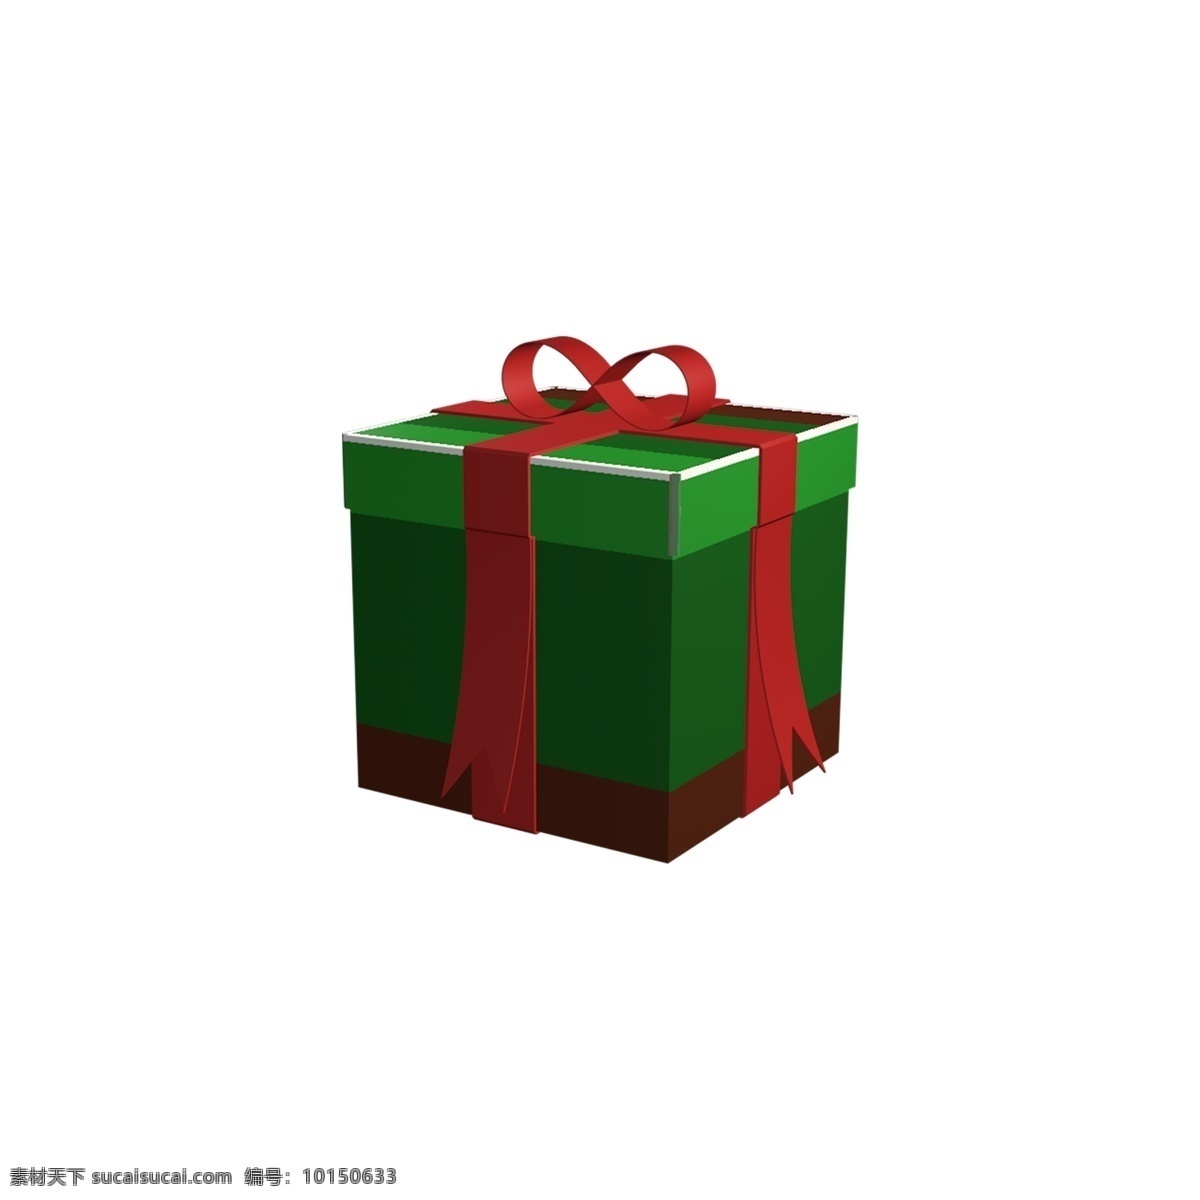 圣诞 礼盒 正方形 c4d 绿色 圣诞礼盒 正方形礼盒 c4d礼盒 绿色礼盒 彩带礼盒